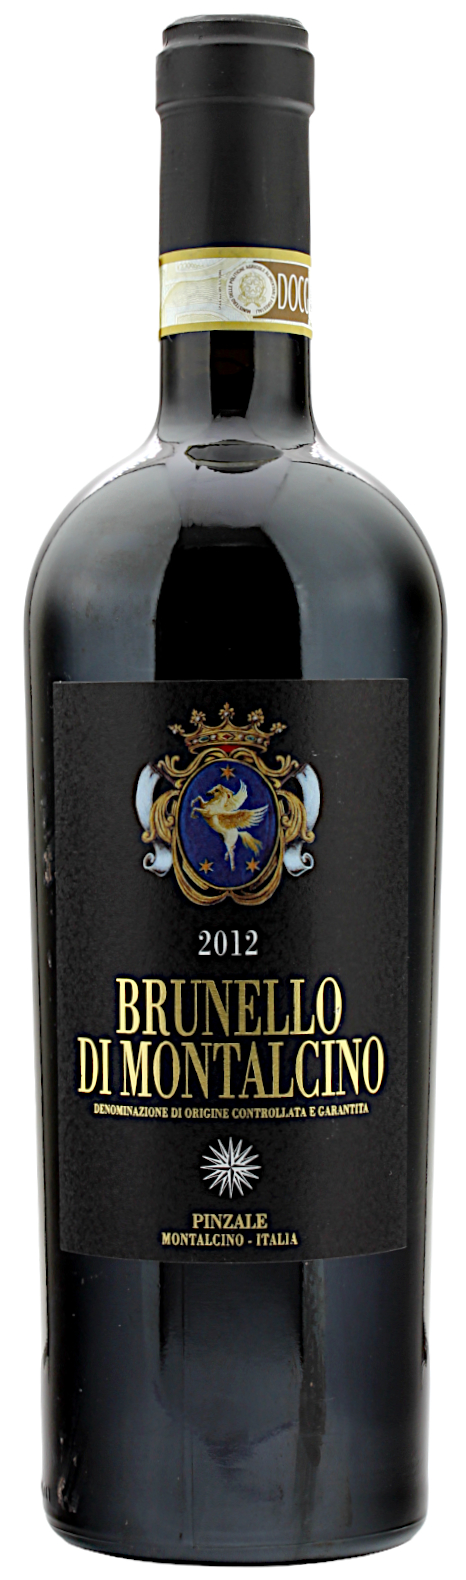 Brunello di Montalcino DOCG Pinzale 2012 13.5% 0,75l